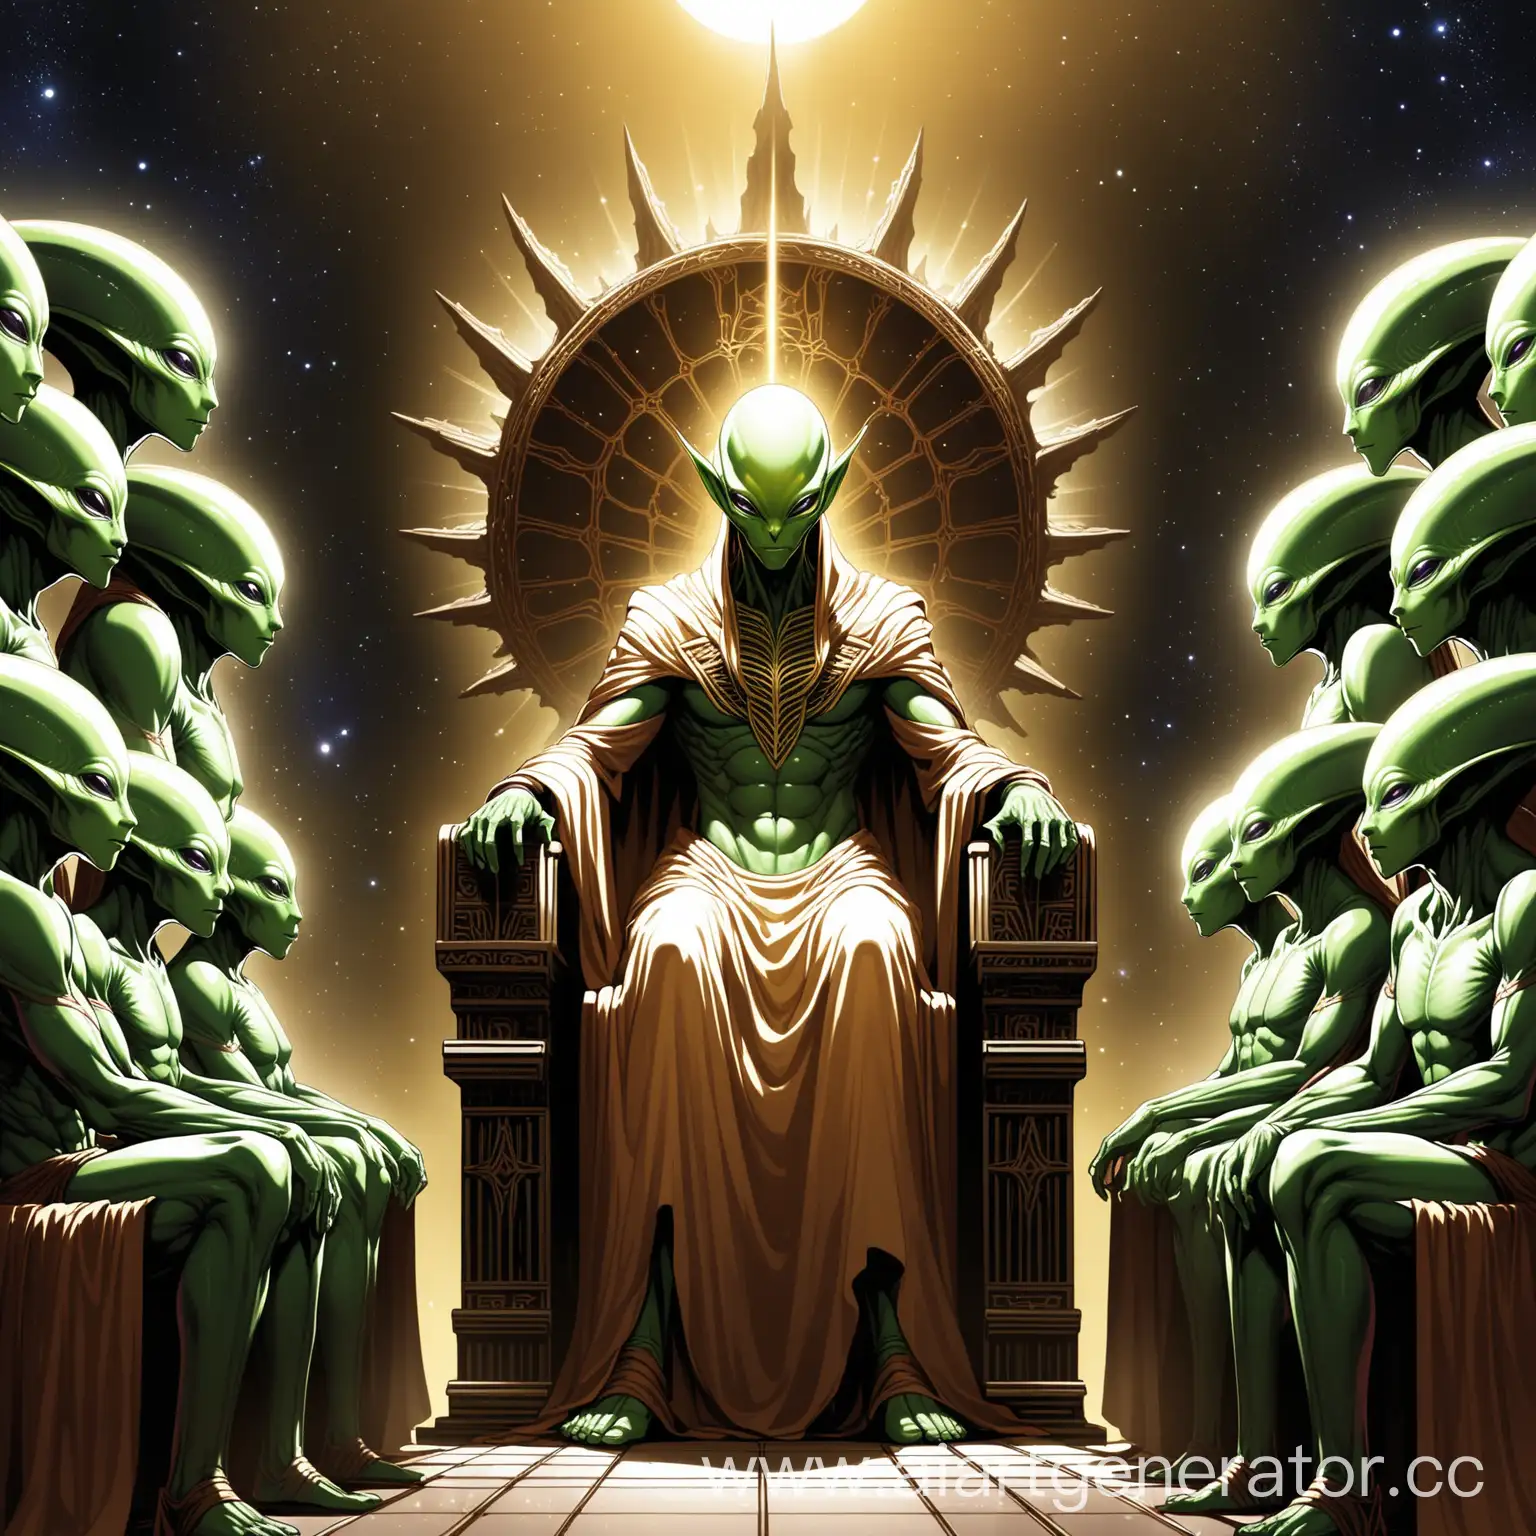 Supreme-Alien-Deity-Receives-Universal-Adoration